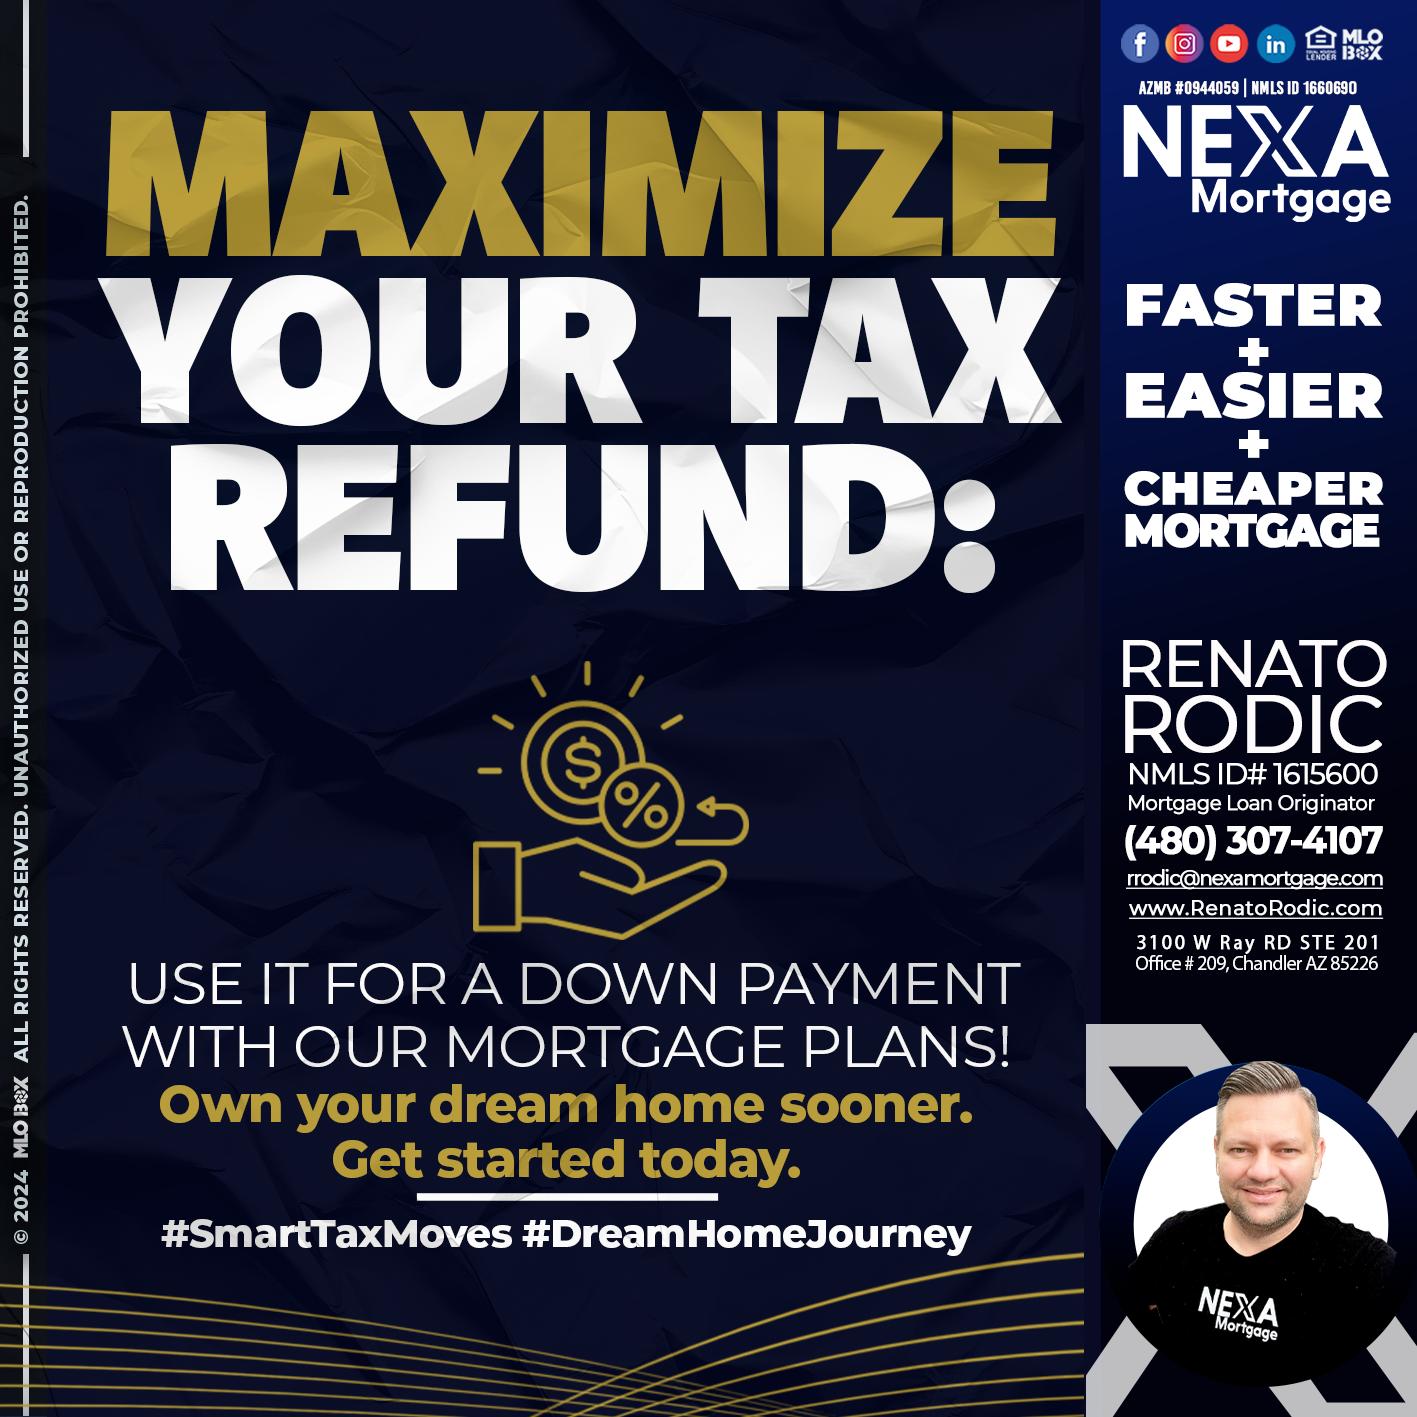 maximize - Renato Rodic -Mortgage Loan Originator